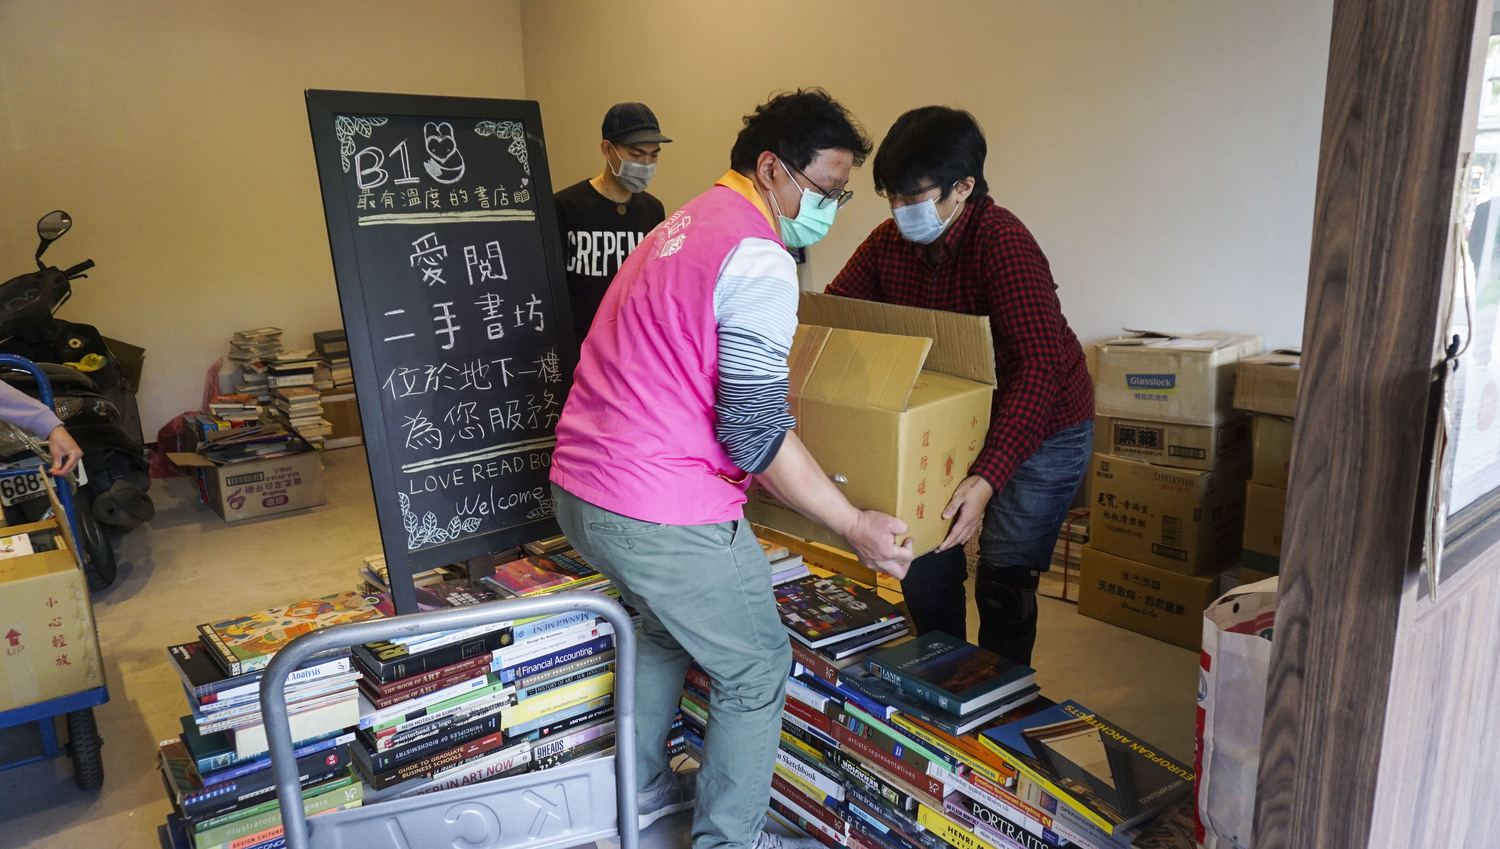 愛閱二手書坊志工協助整理及搬運二手書。   網銀基金會/提供